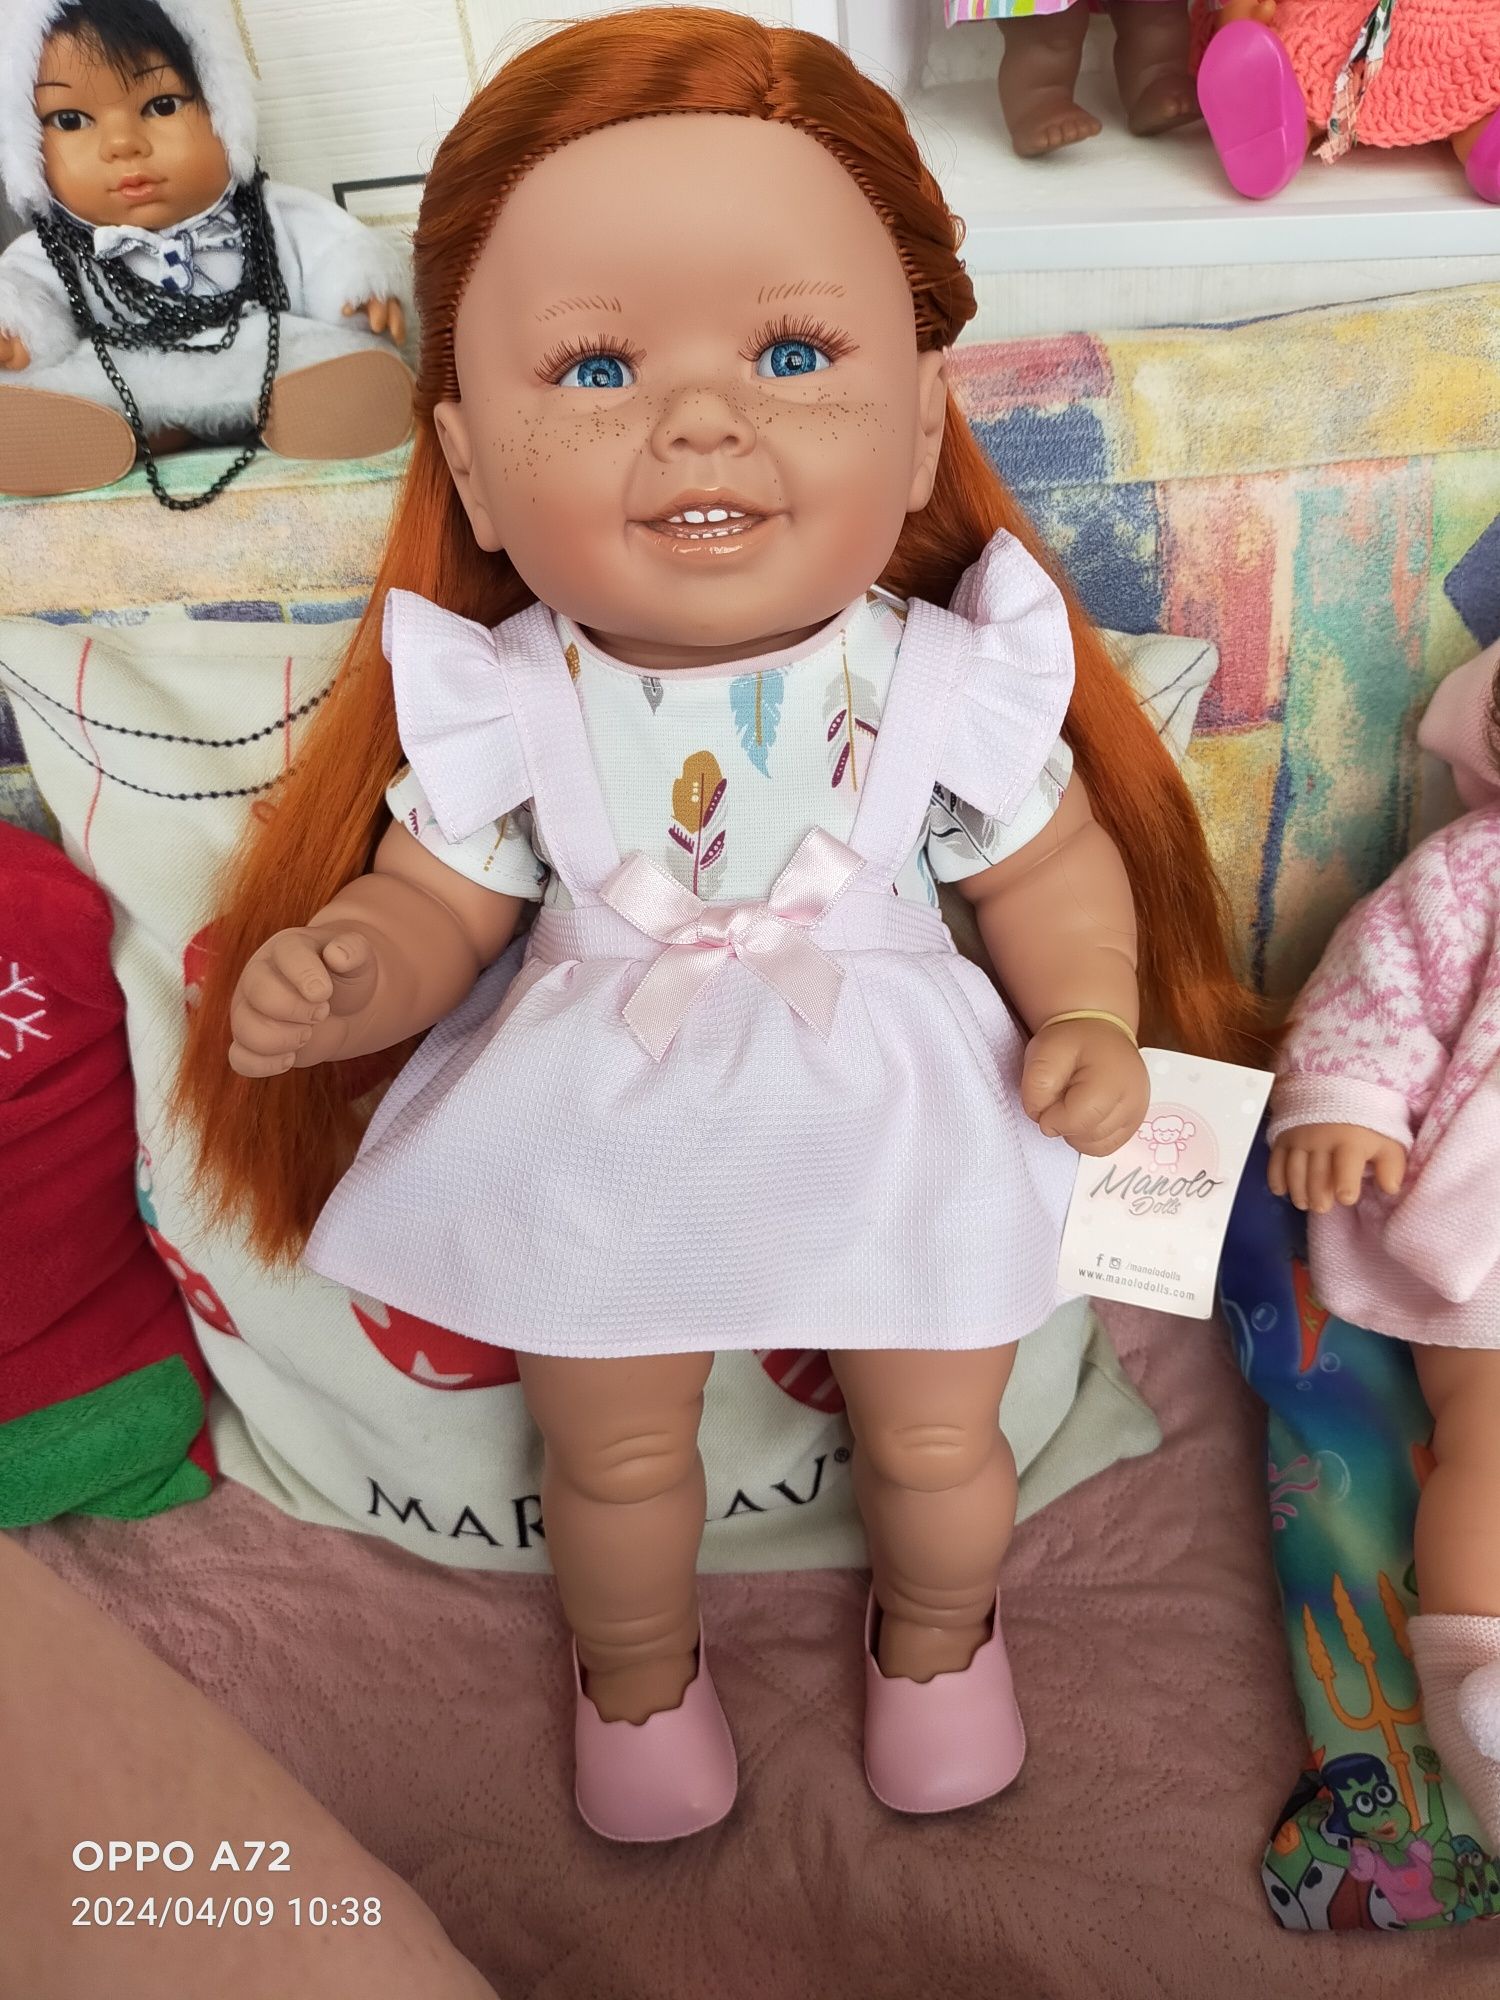 Продам испанские куклы и пупсика ГДР